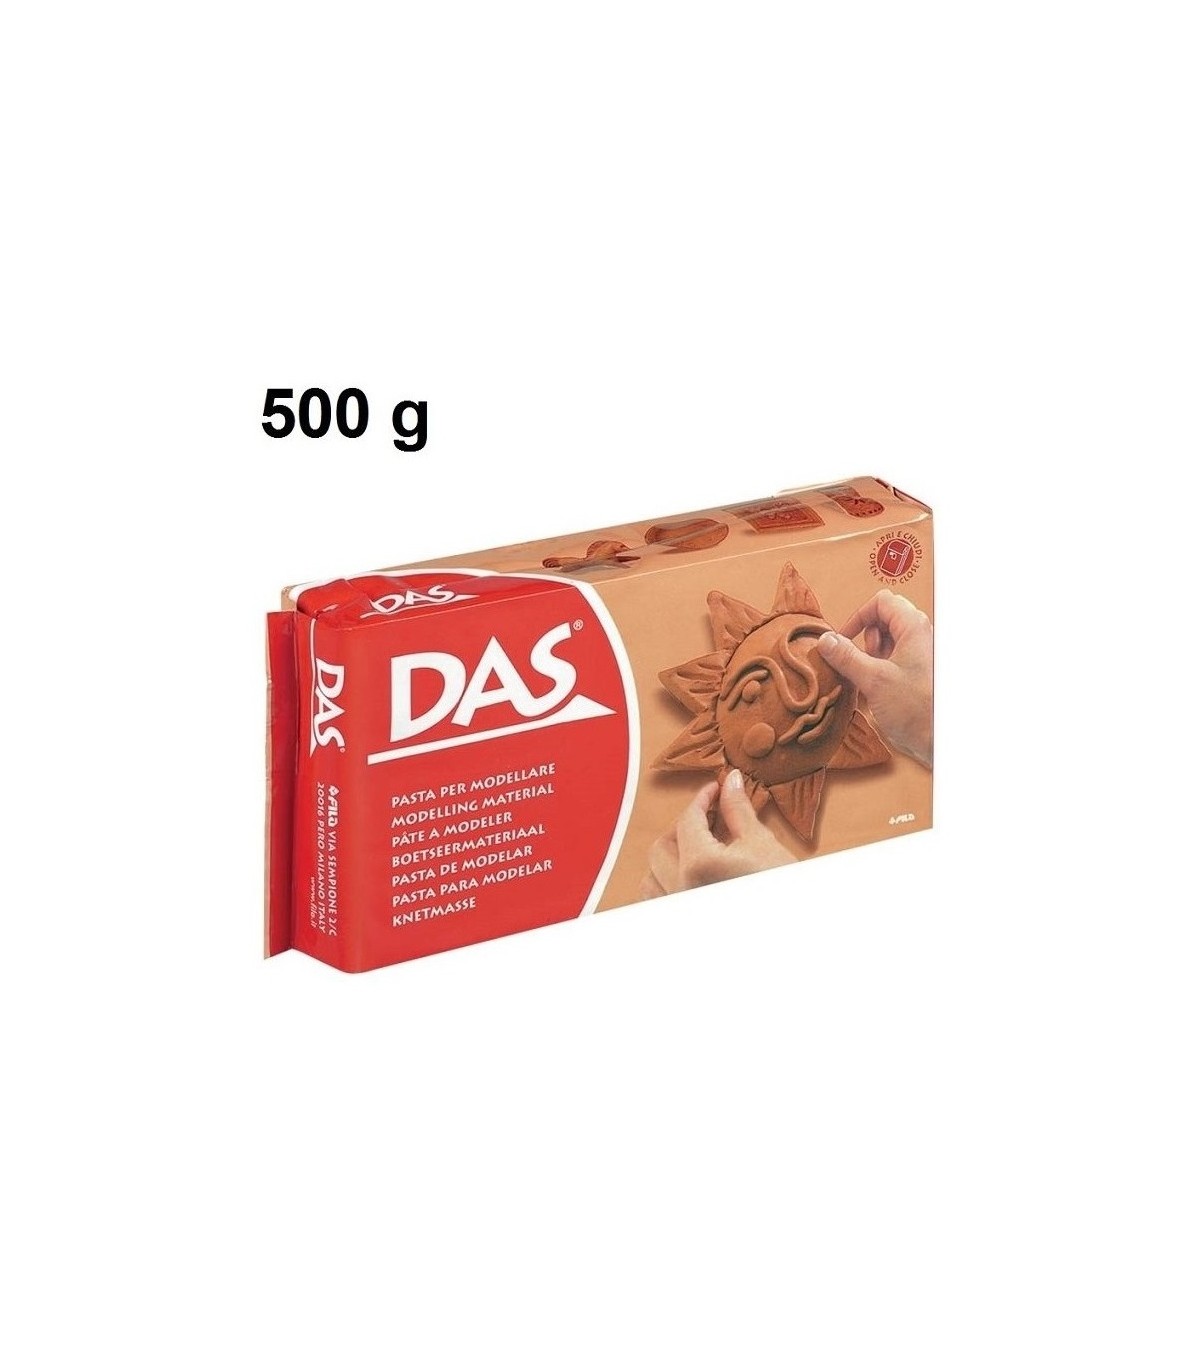 Pasta per modellare DAS Terracotta 500 g.